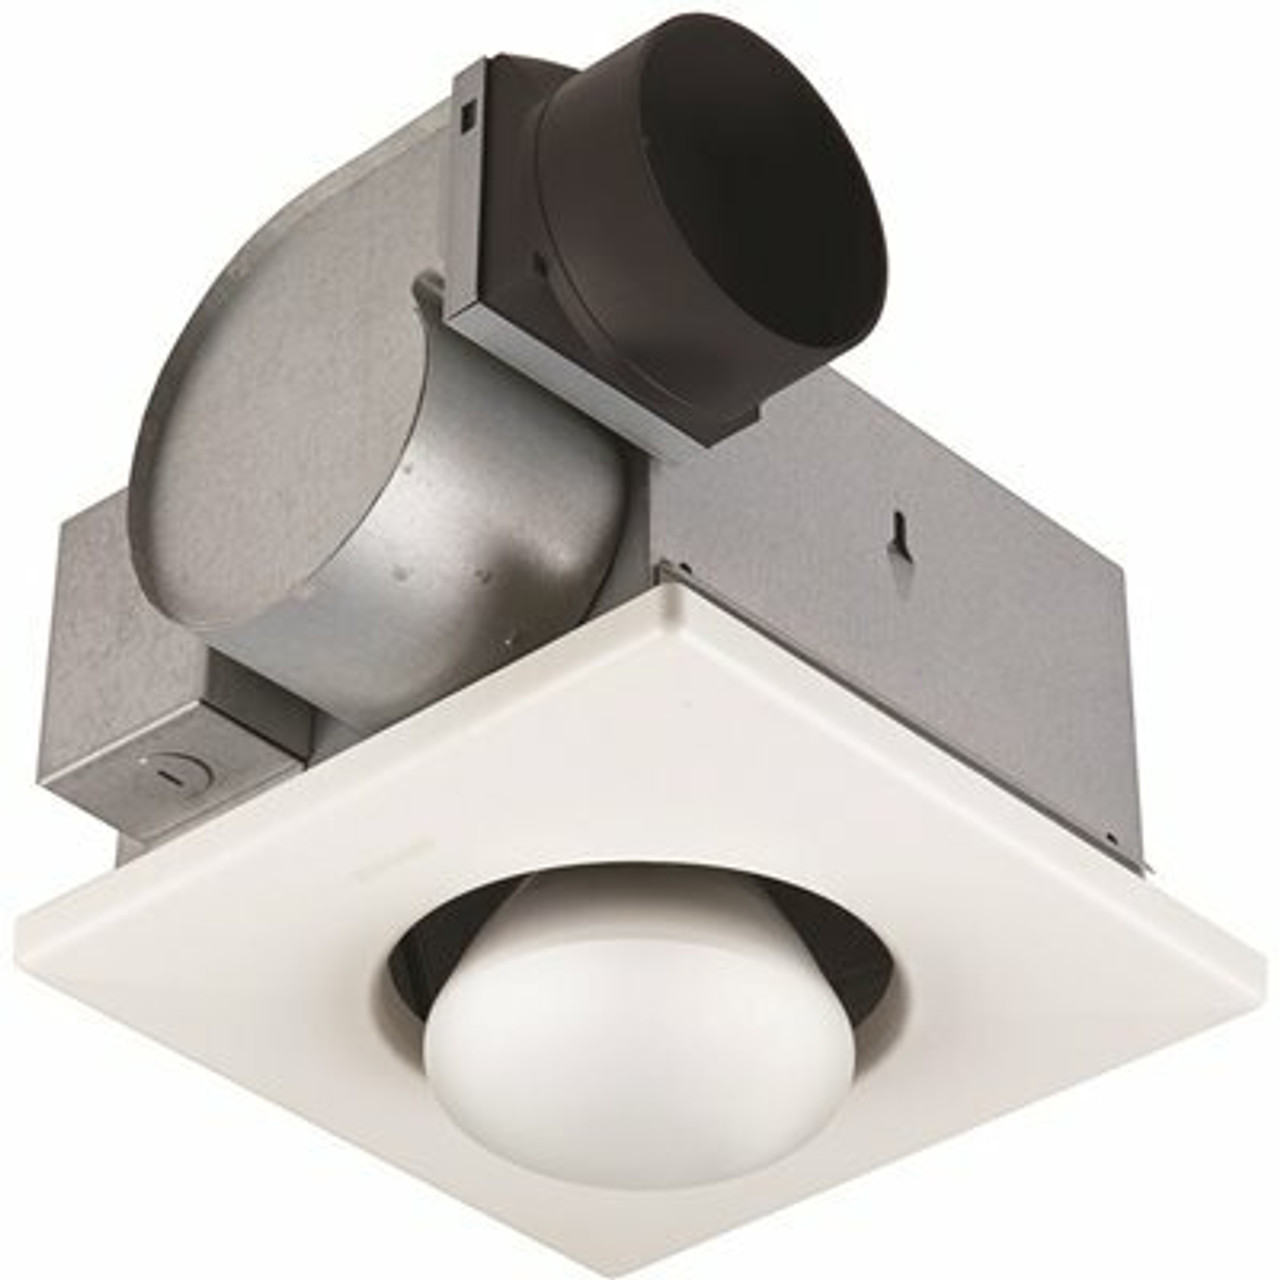 Broan-Nutone Ceiling Bathroom Exhaust Fan / Infrared Heater, 70 Cfm, 250-Watt